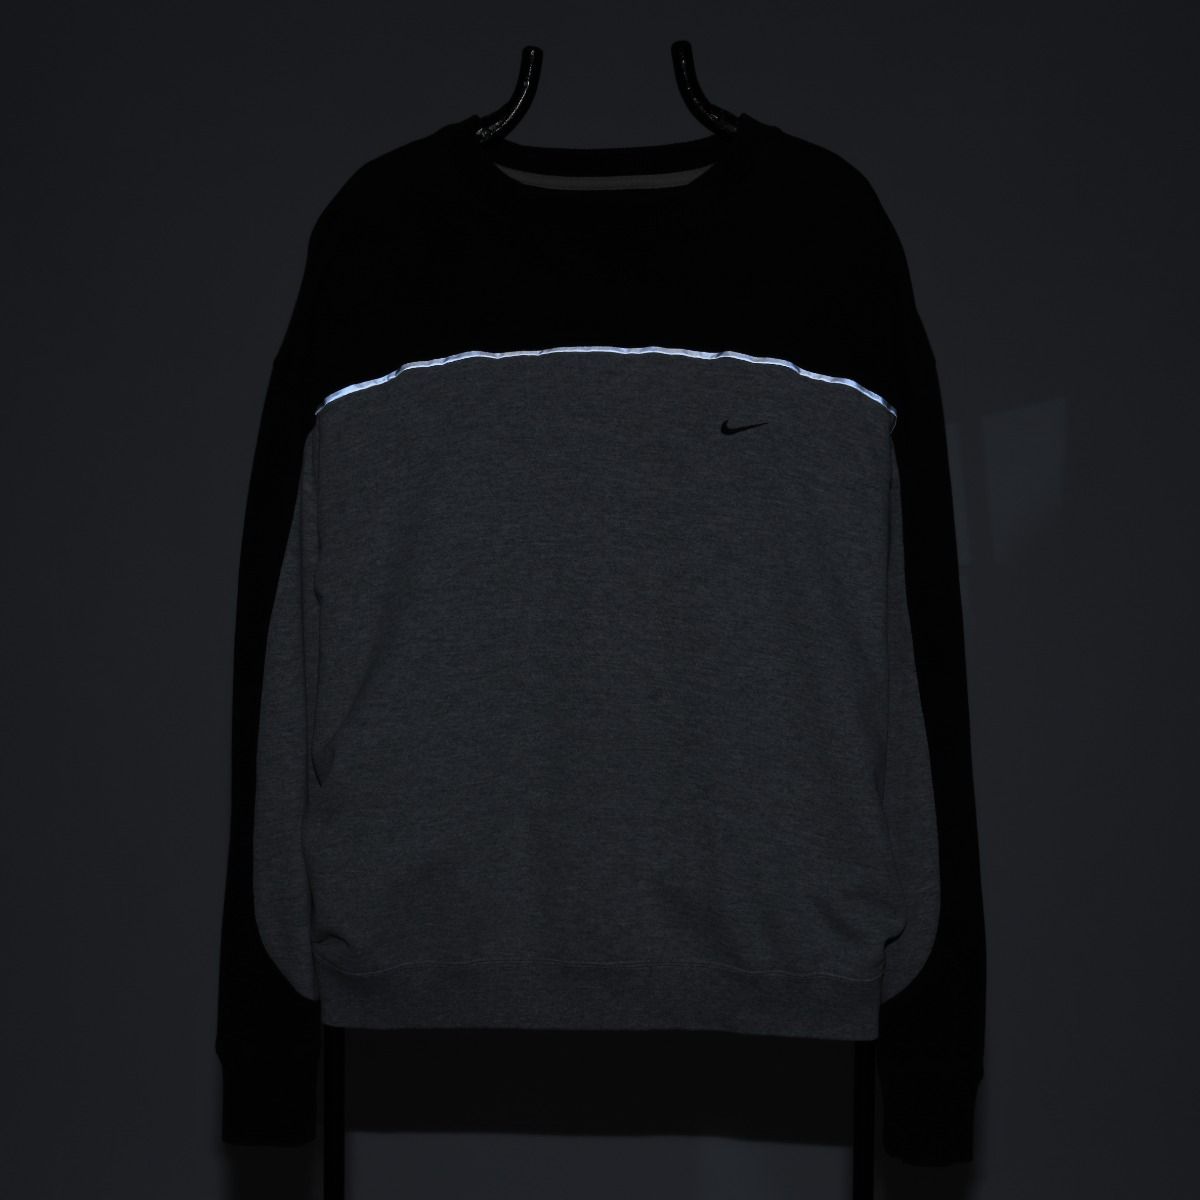 Nike REWORKED Sweatshirt